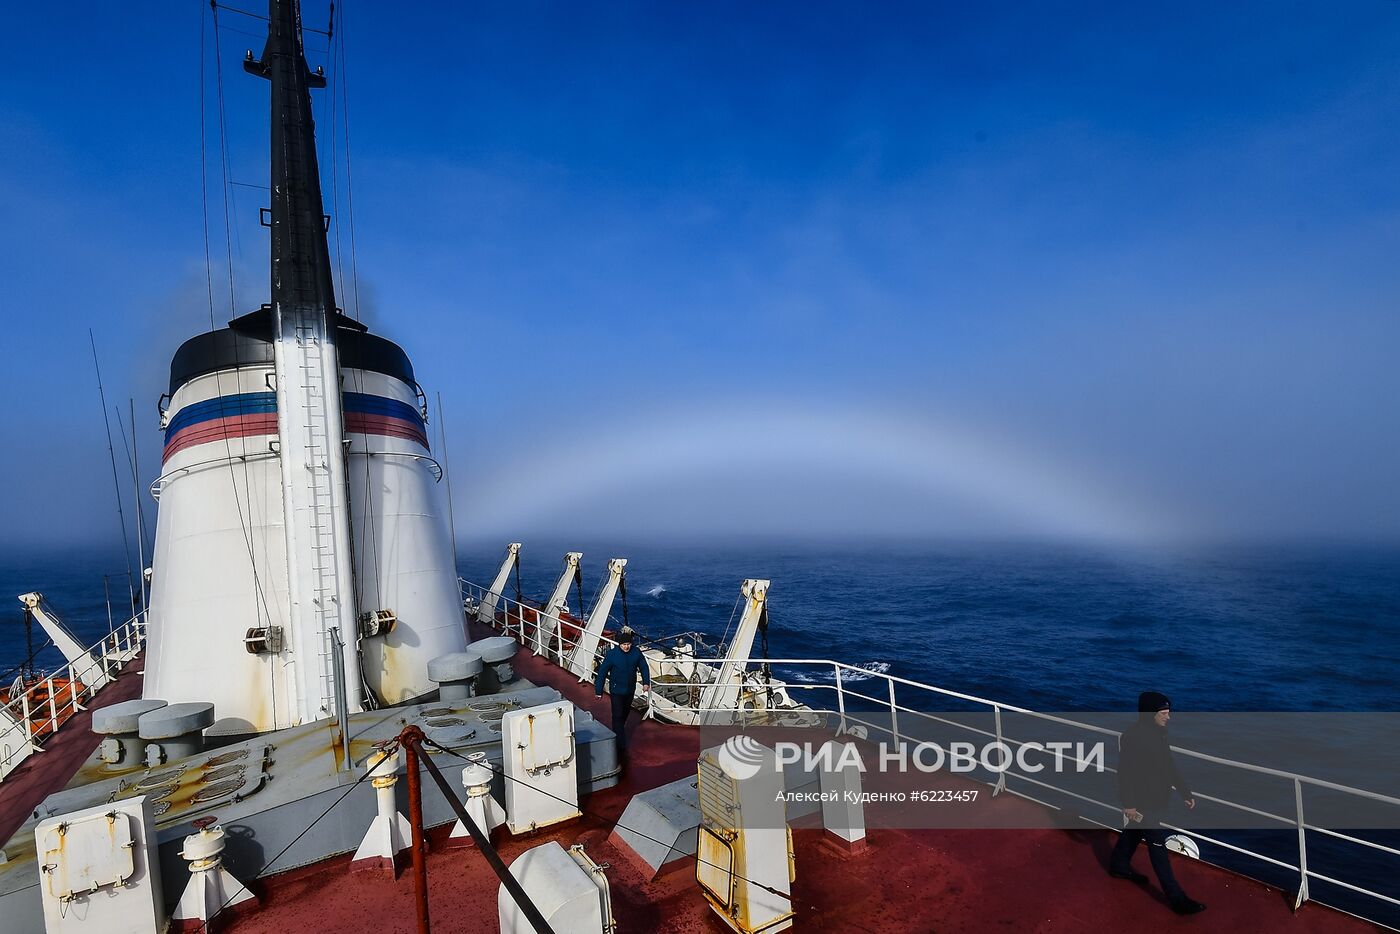 Продолжается кругосветная экспедиция на судне "Адмирал Владимирский"